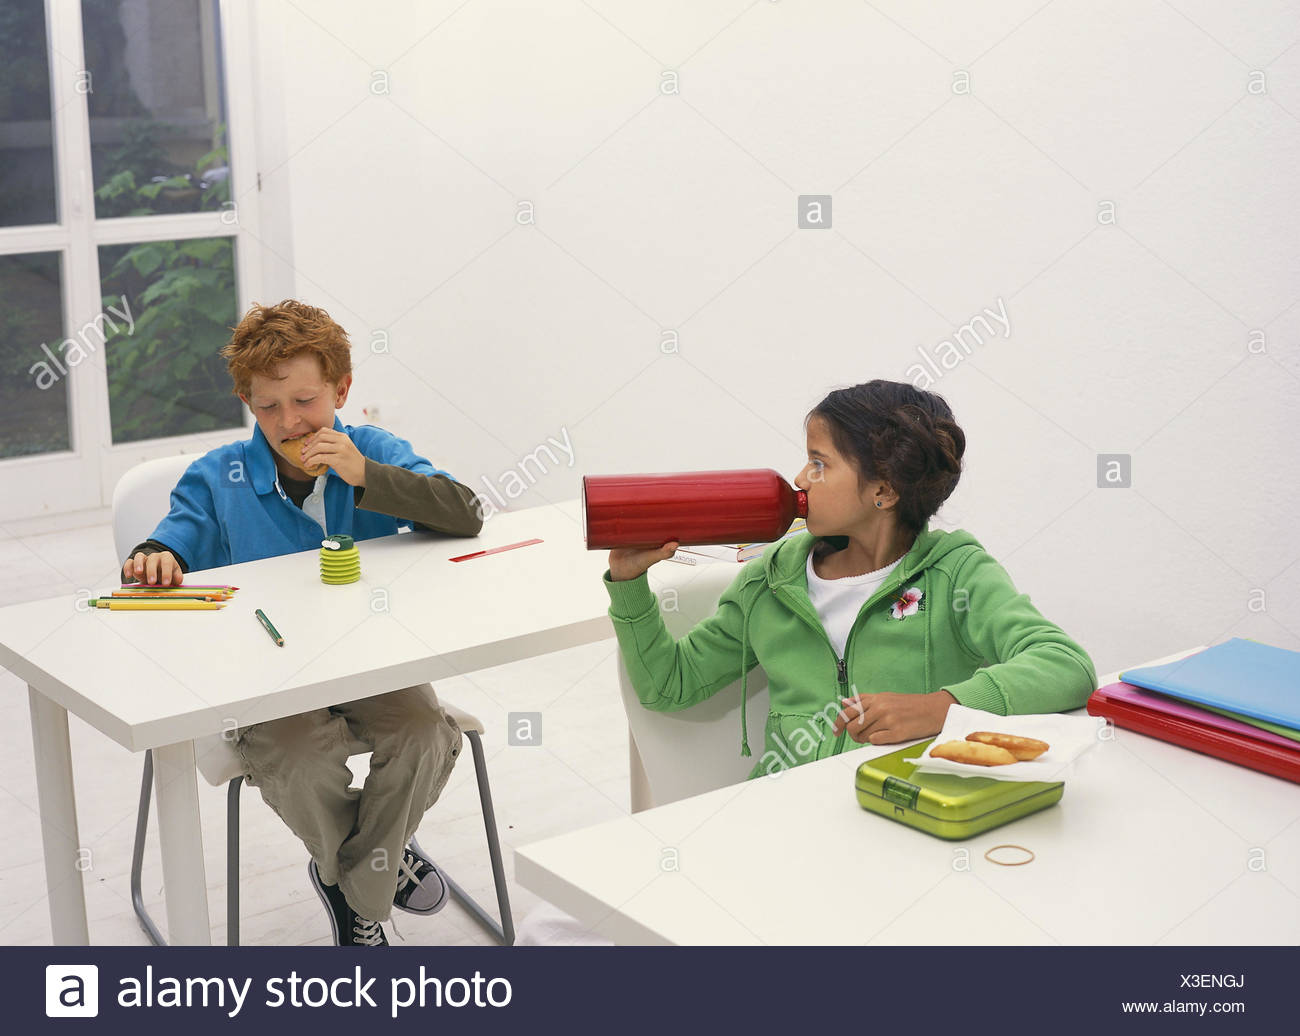 Classrooms Break Schoolboy Eat Drink School School Desks